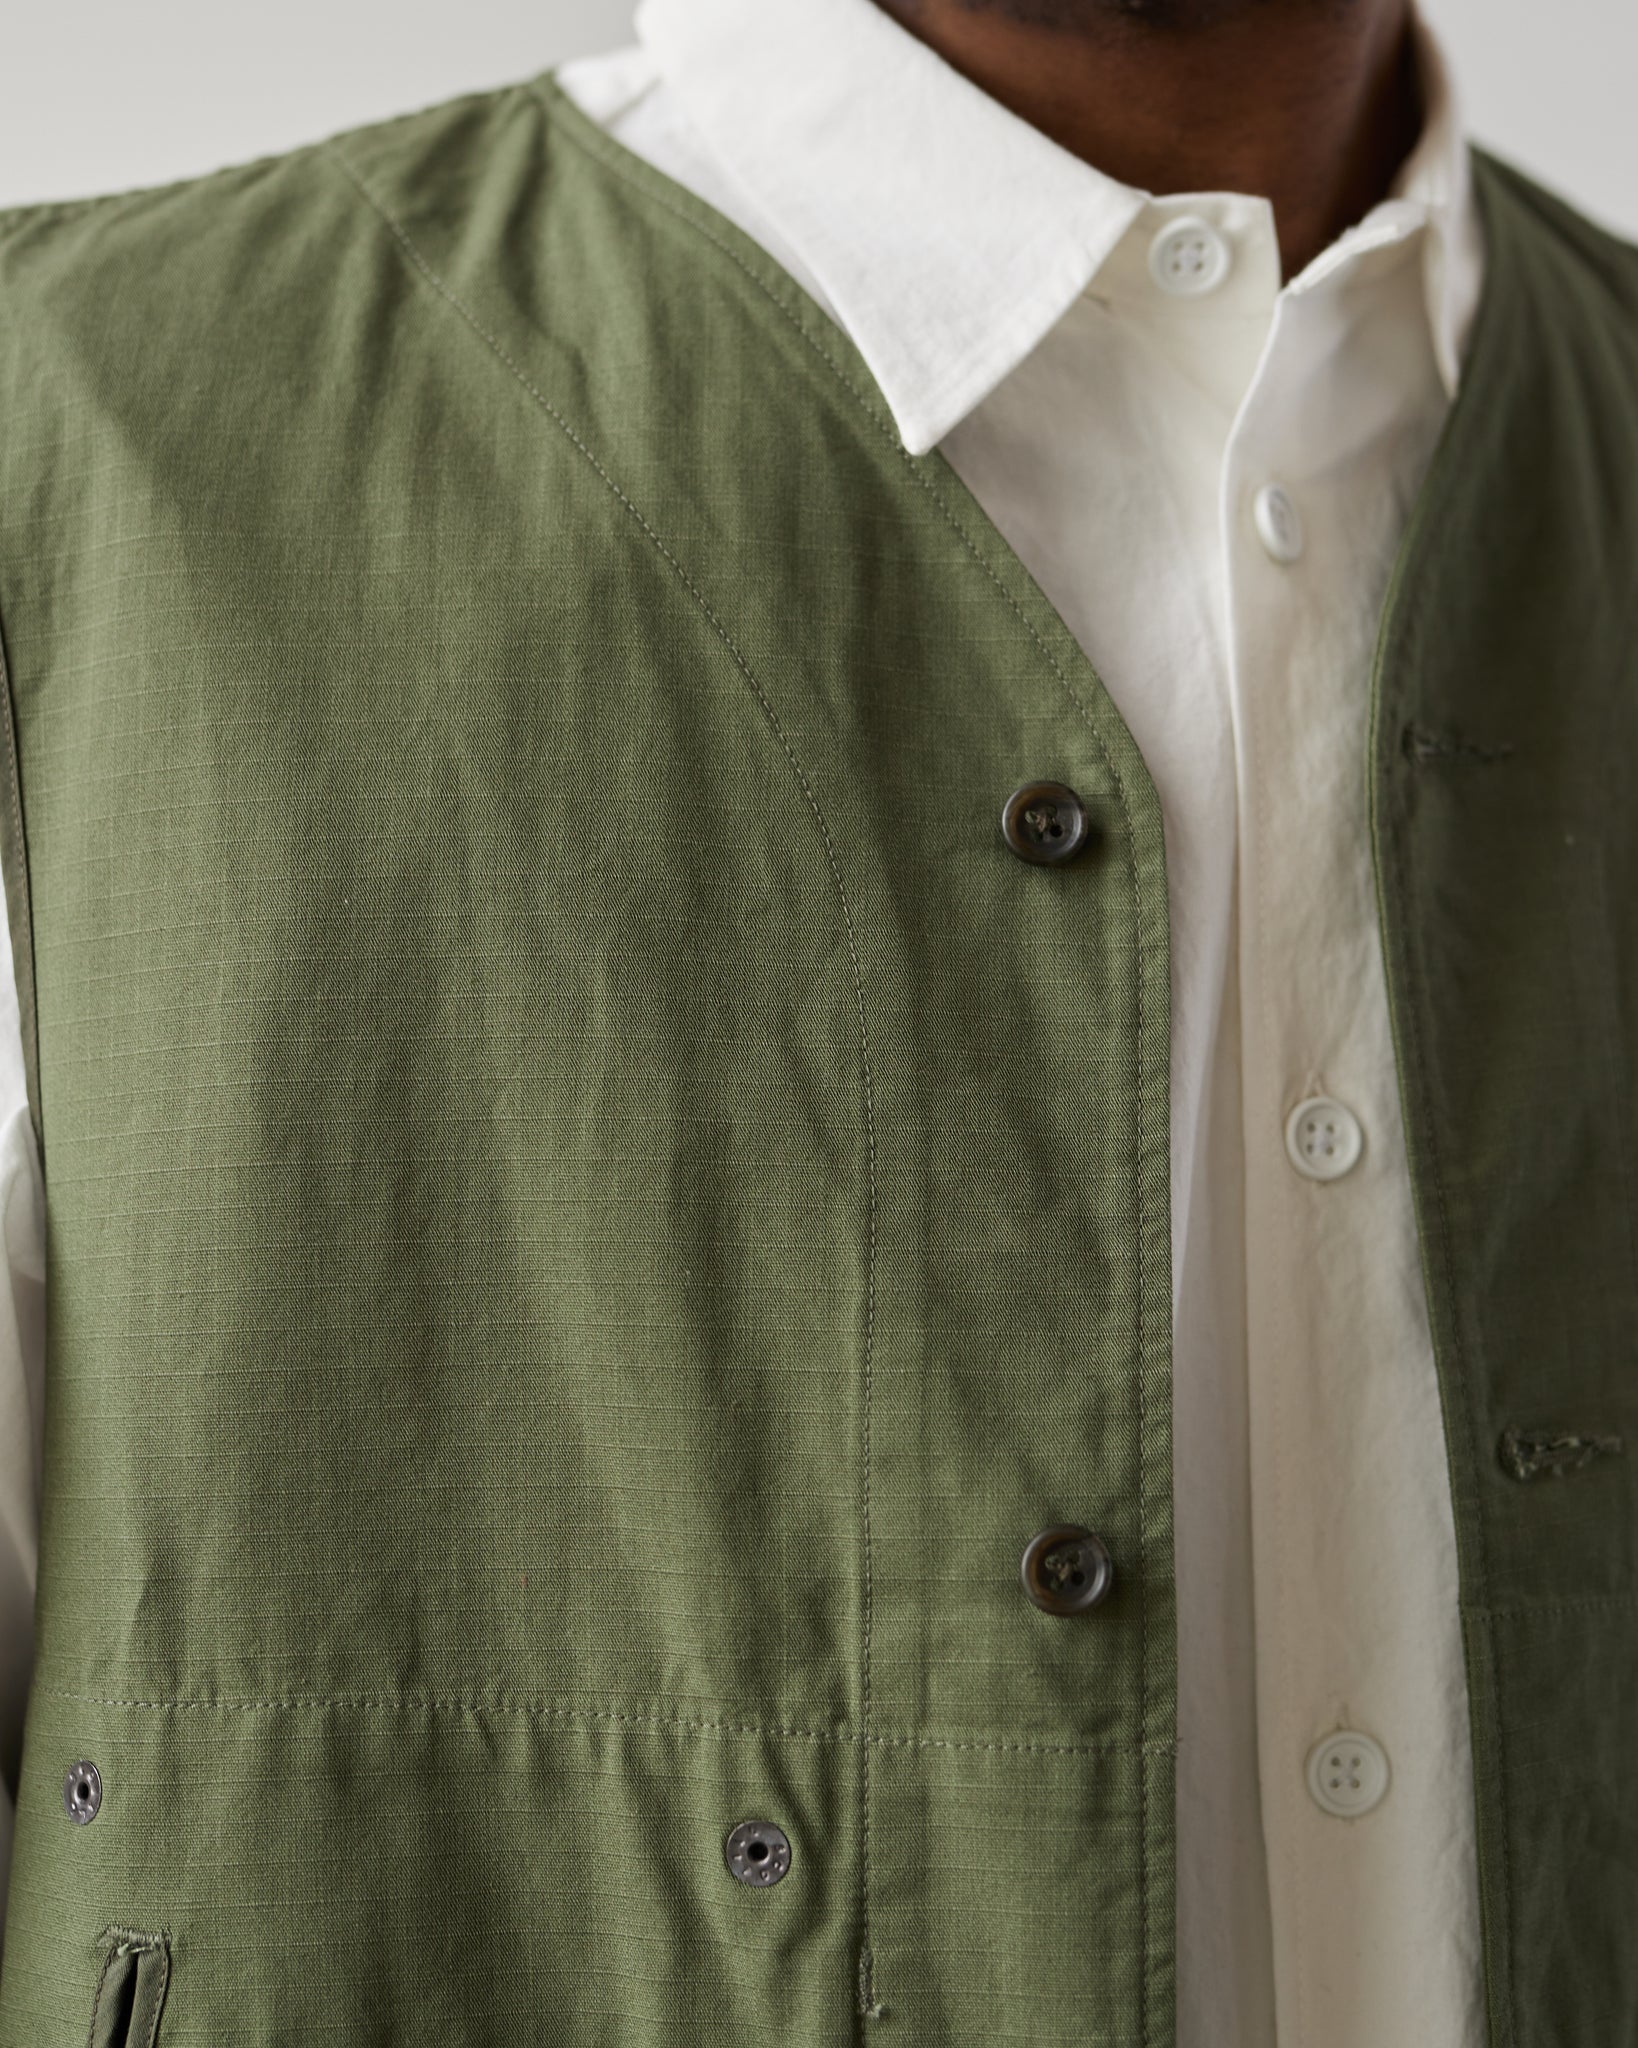 Engineered Garments Liner Vest, Olive